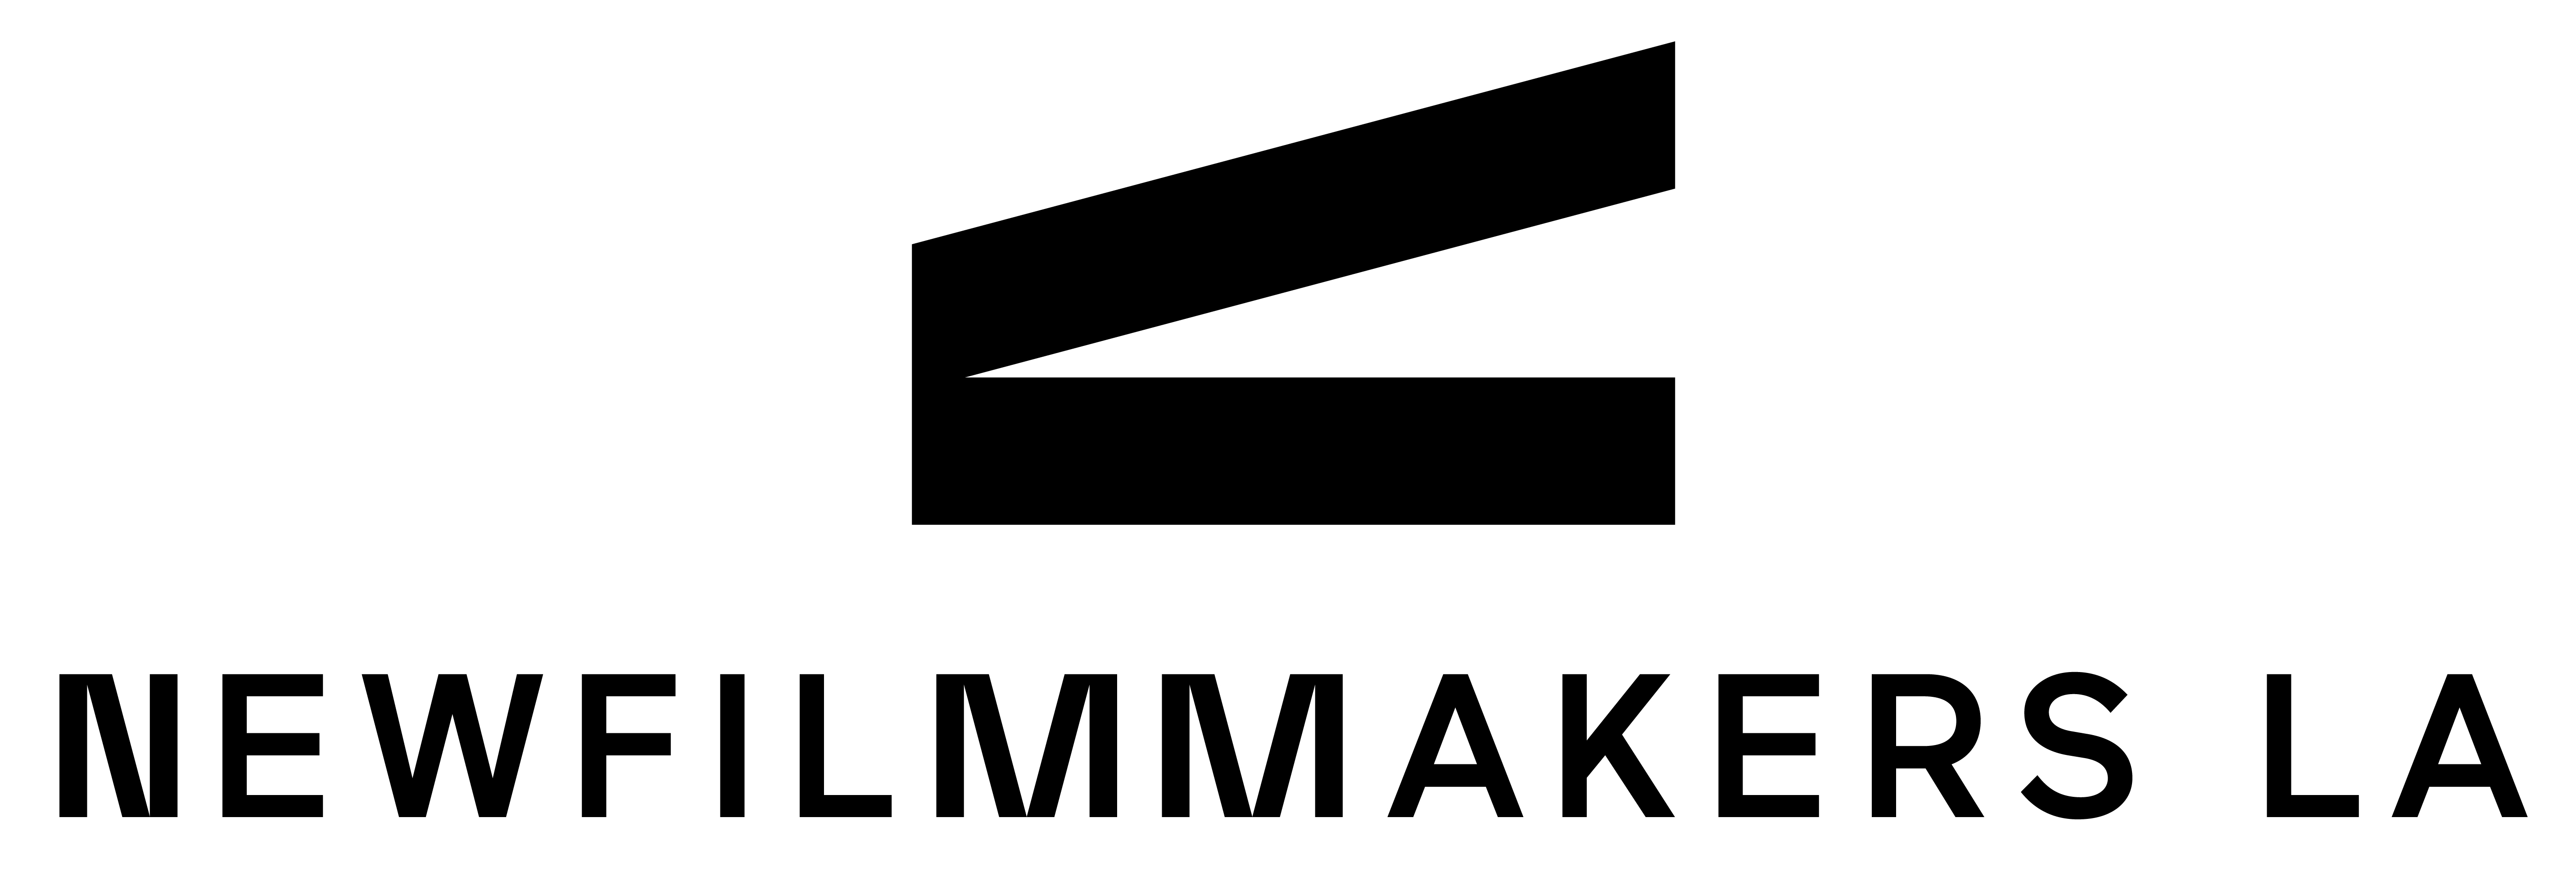 NFMLA Logo